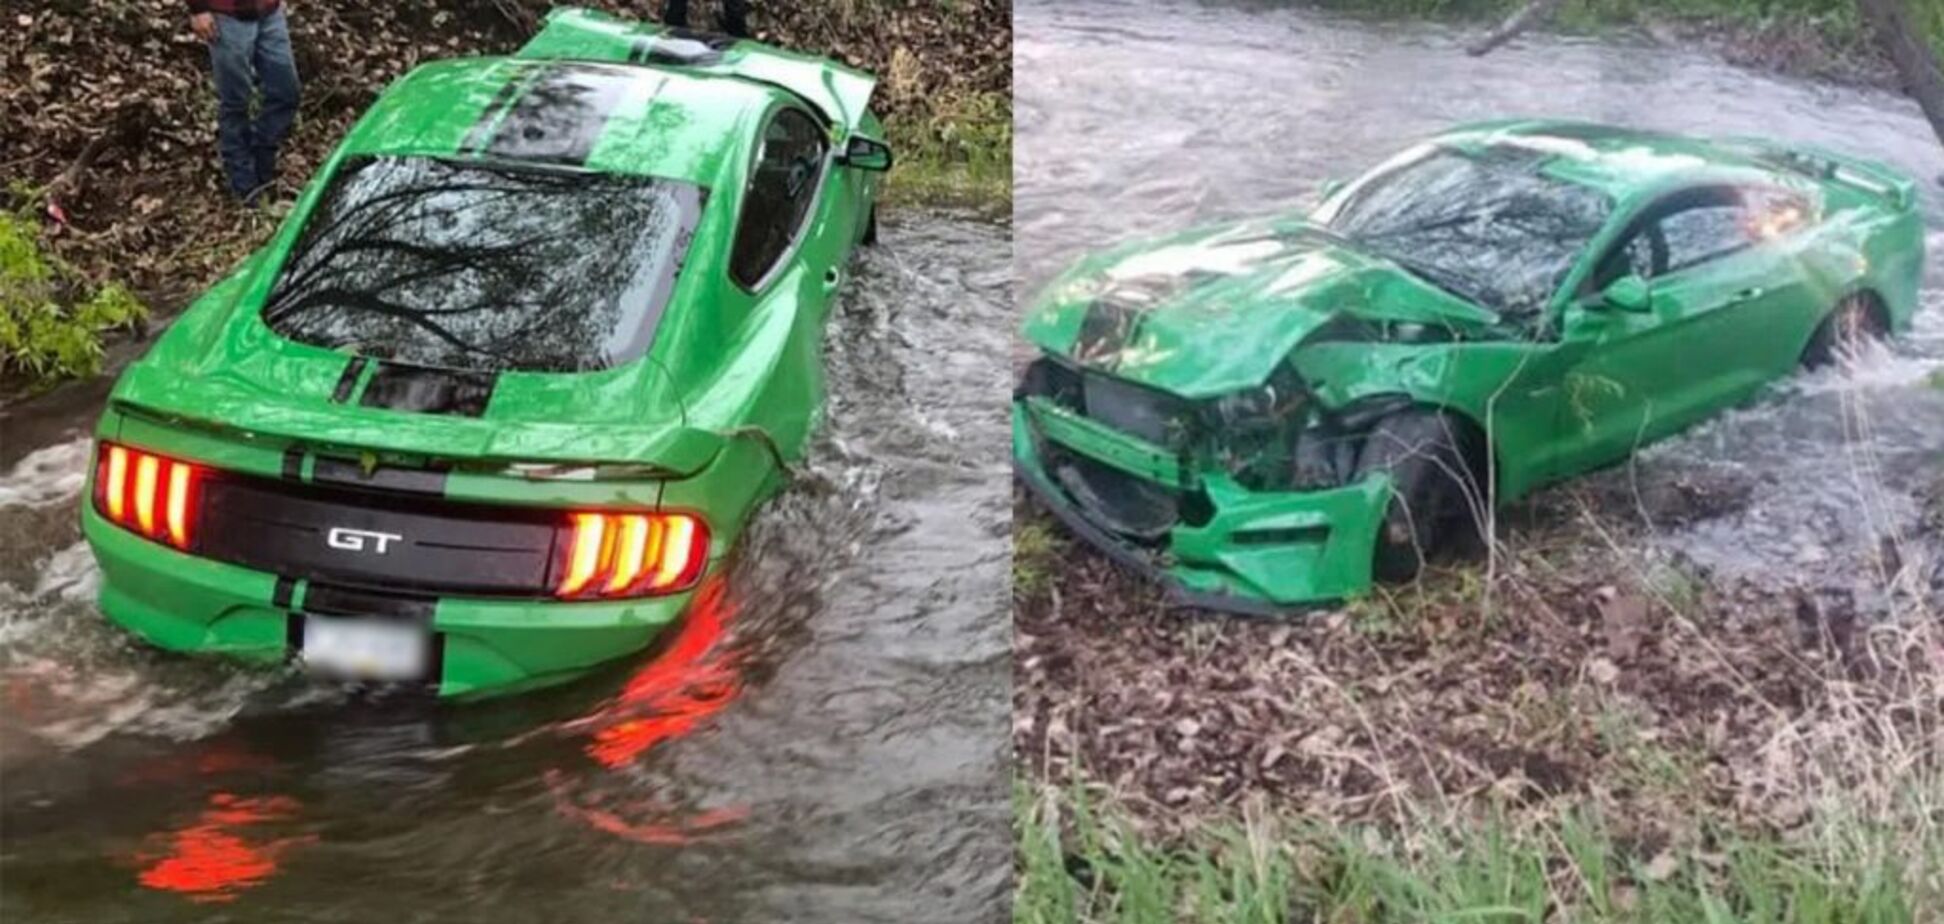 Новый Ford Mustang разбили и утопили через 3 дня после покупки